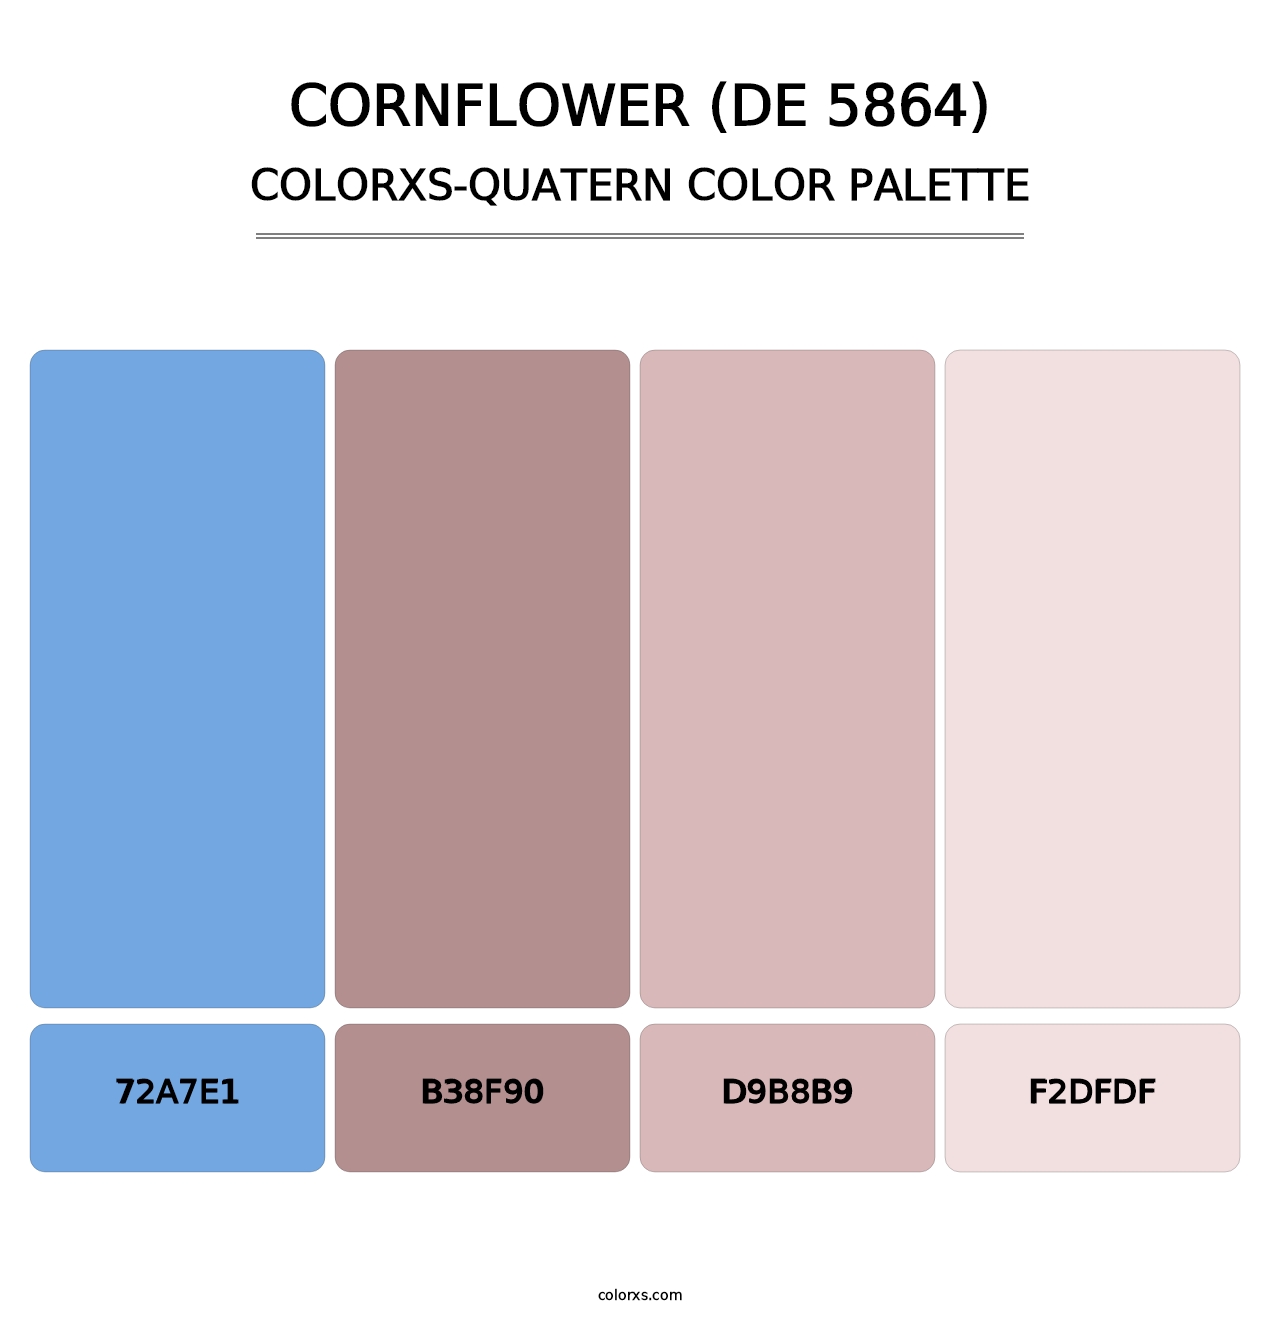 Cornflower (DE 5864) - Colorxs Quatern Palette